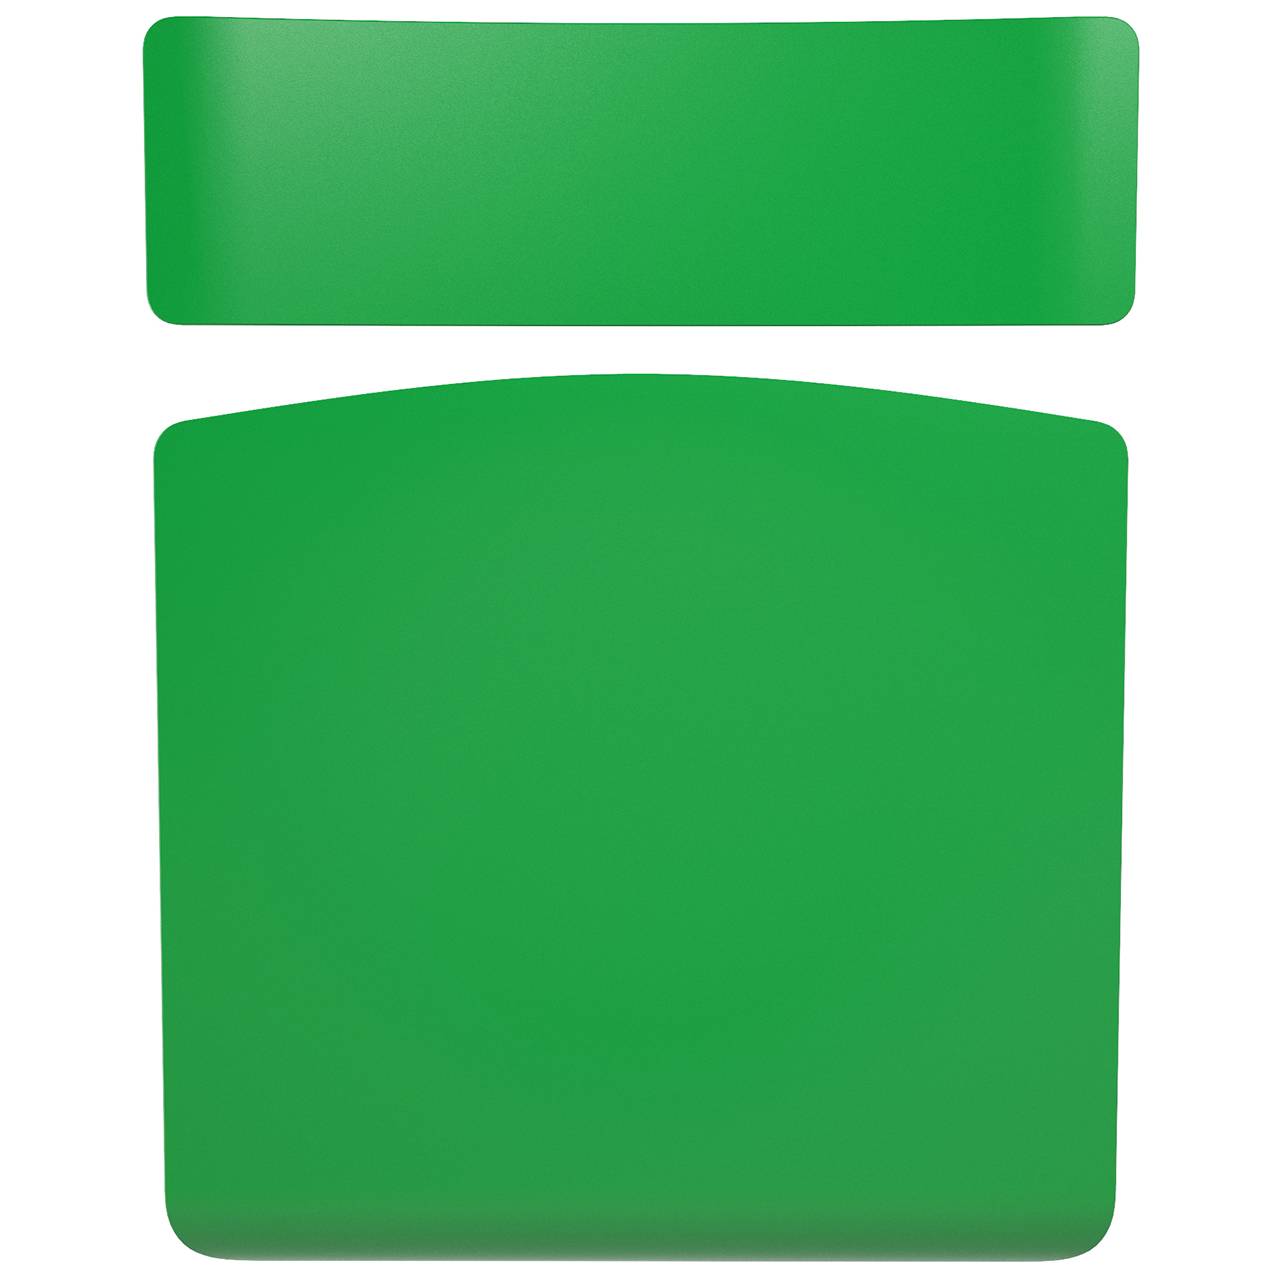 Стул ученический регулируемый (гр. 2-4, 3-5, 4-6 или 5-7) серый Зеленый 5-7 прямоугольная